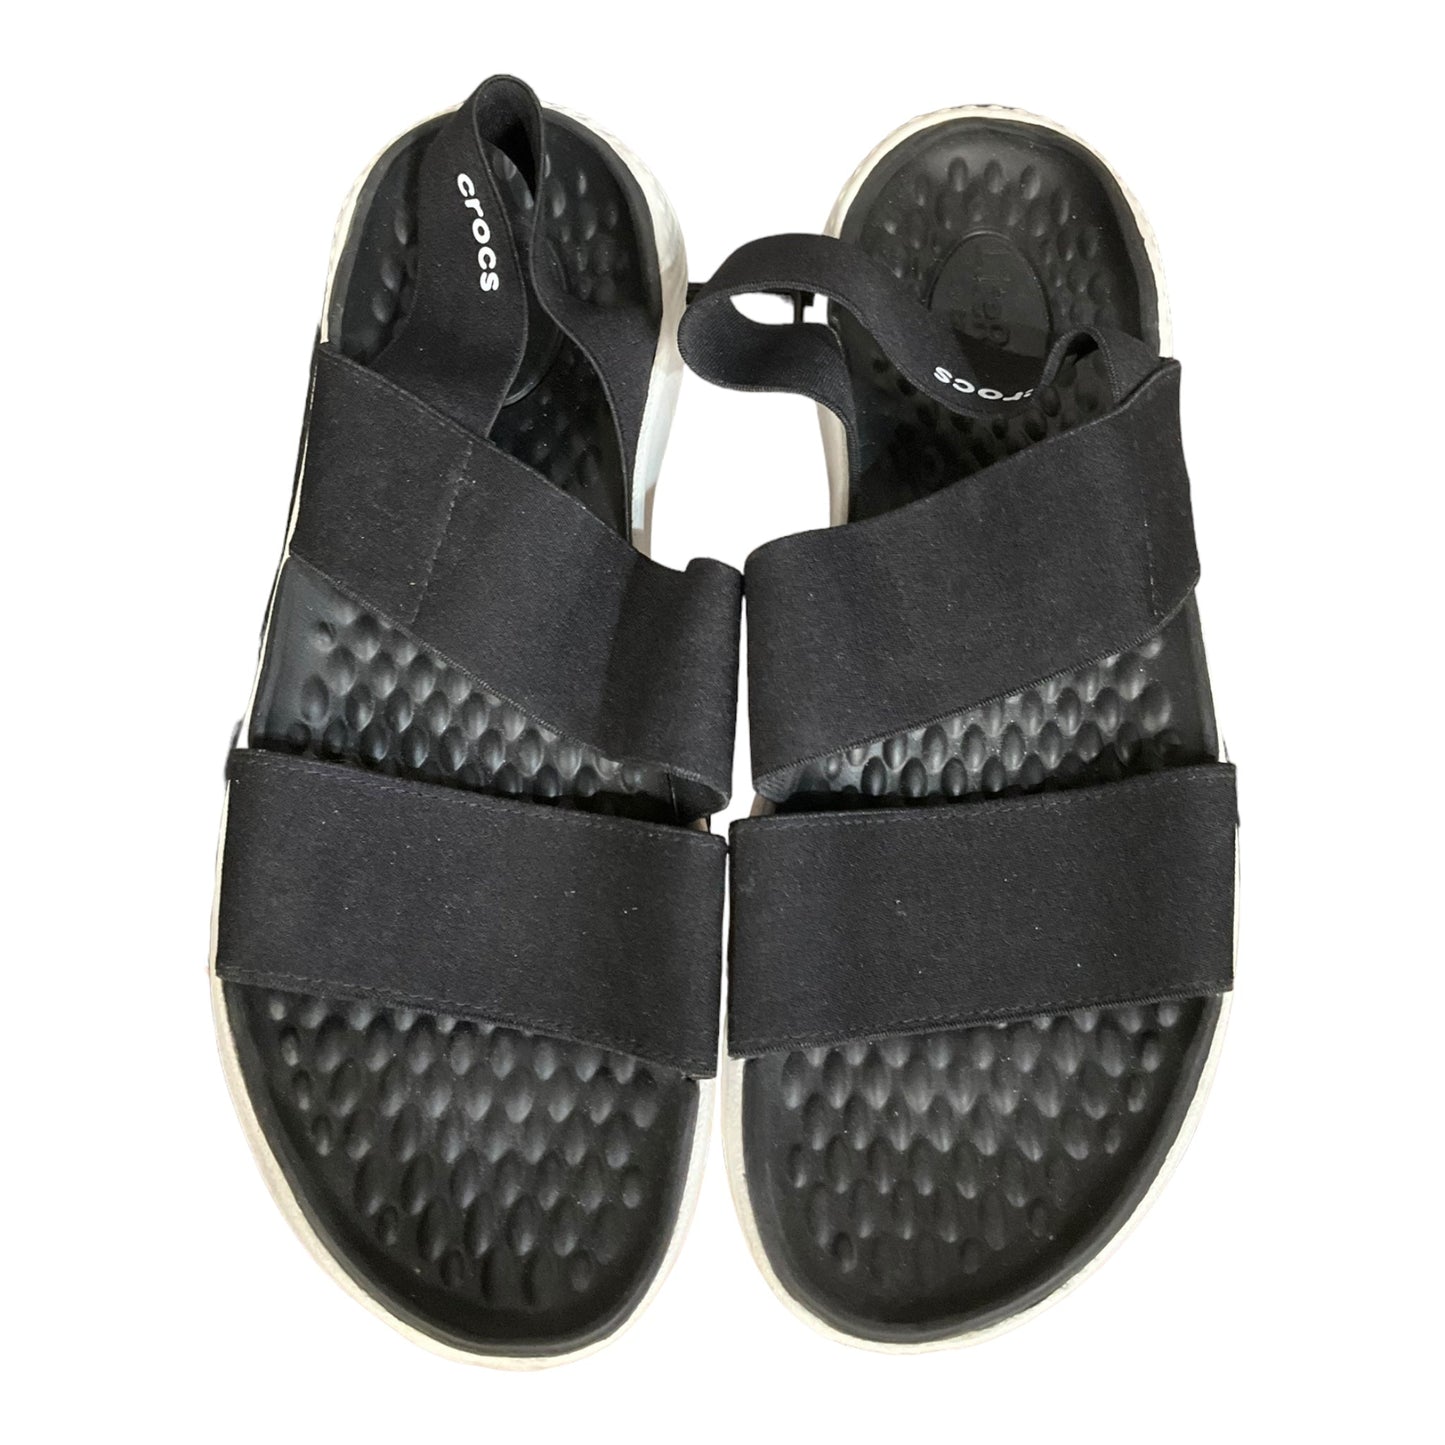 Black Sandals Flats Crocs, Size 7